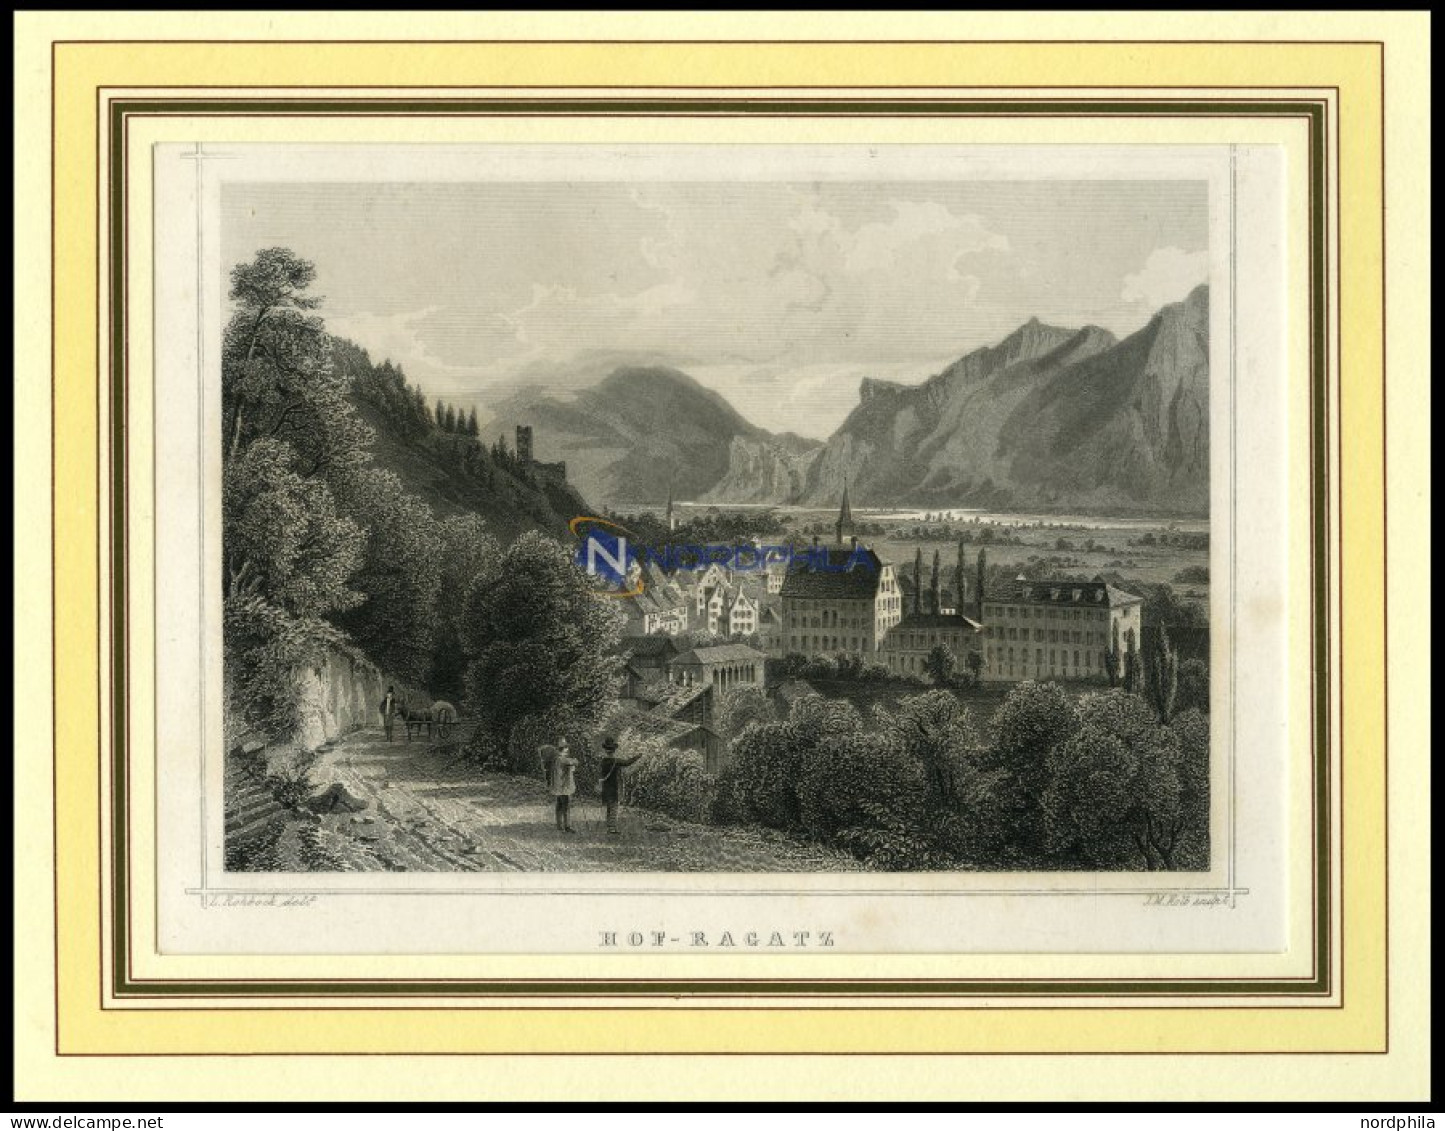 HOF-RAGATZ, Teilansicht, Stahlstich Von Rohbock/Kolb Um 1840 - Lithografieën